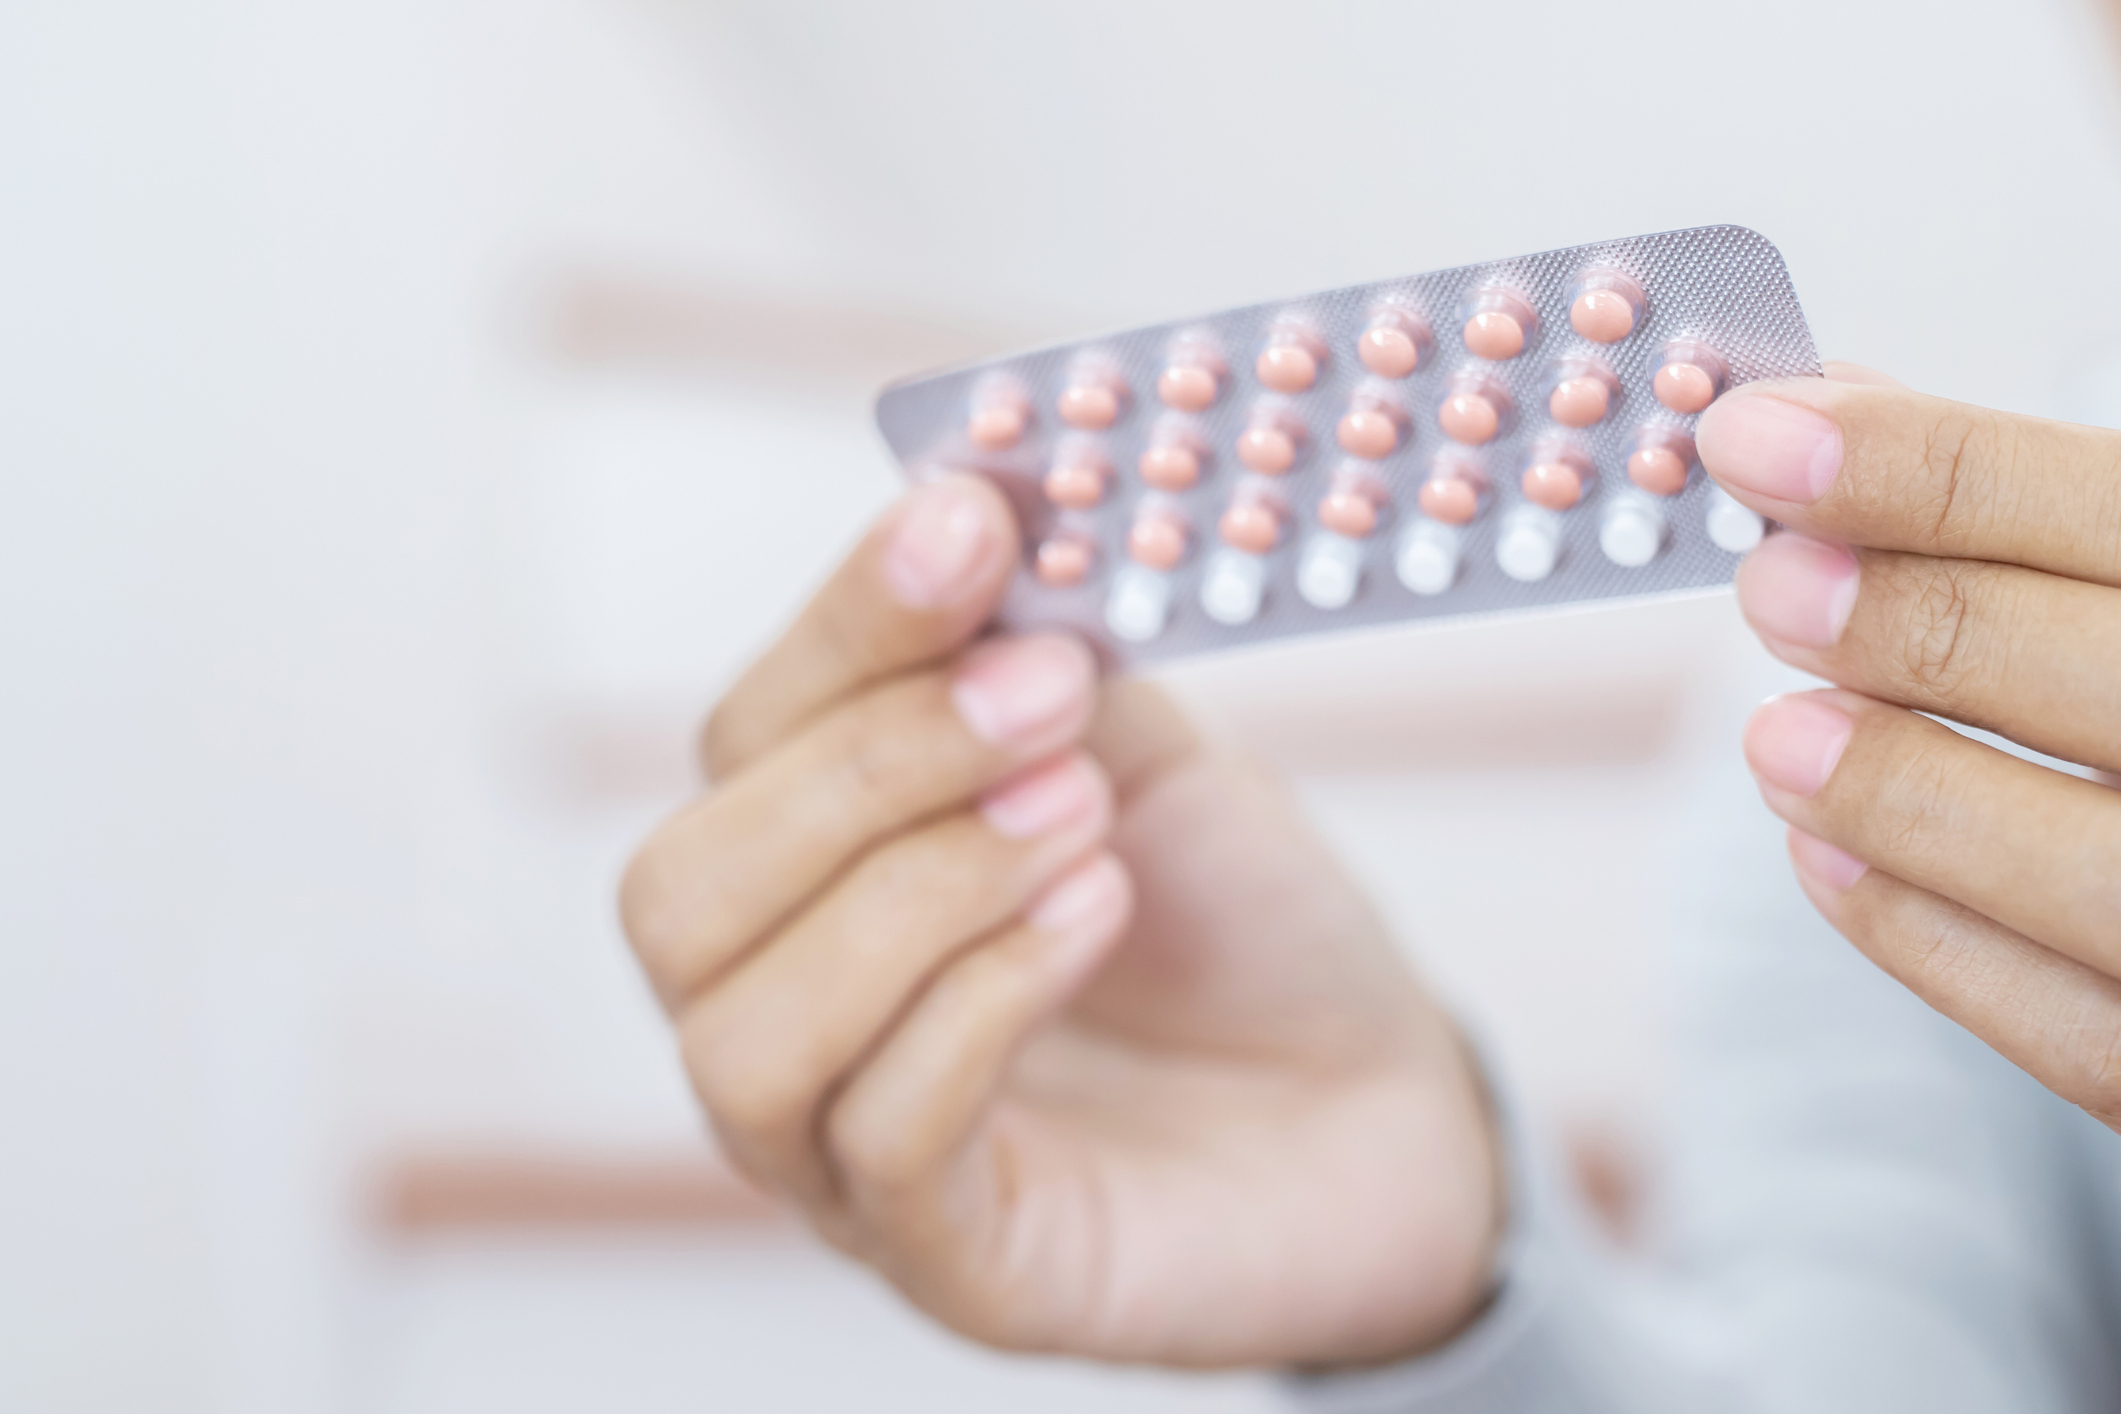 Renouvellement d'ordonnance de pilule : comment faire ?